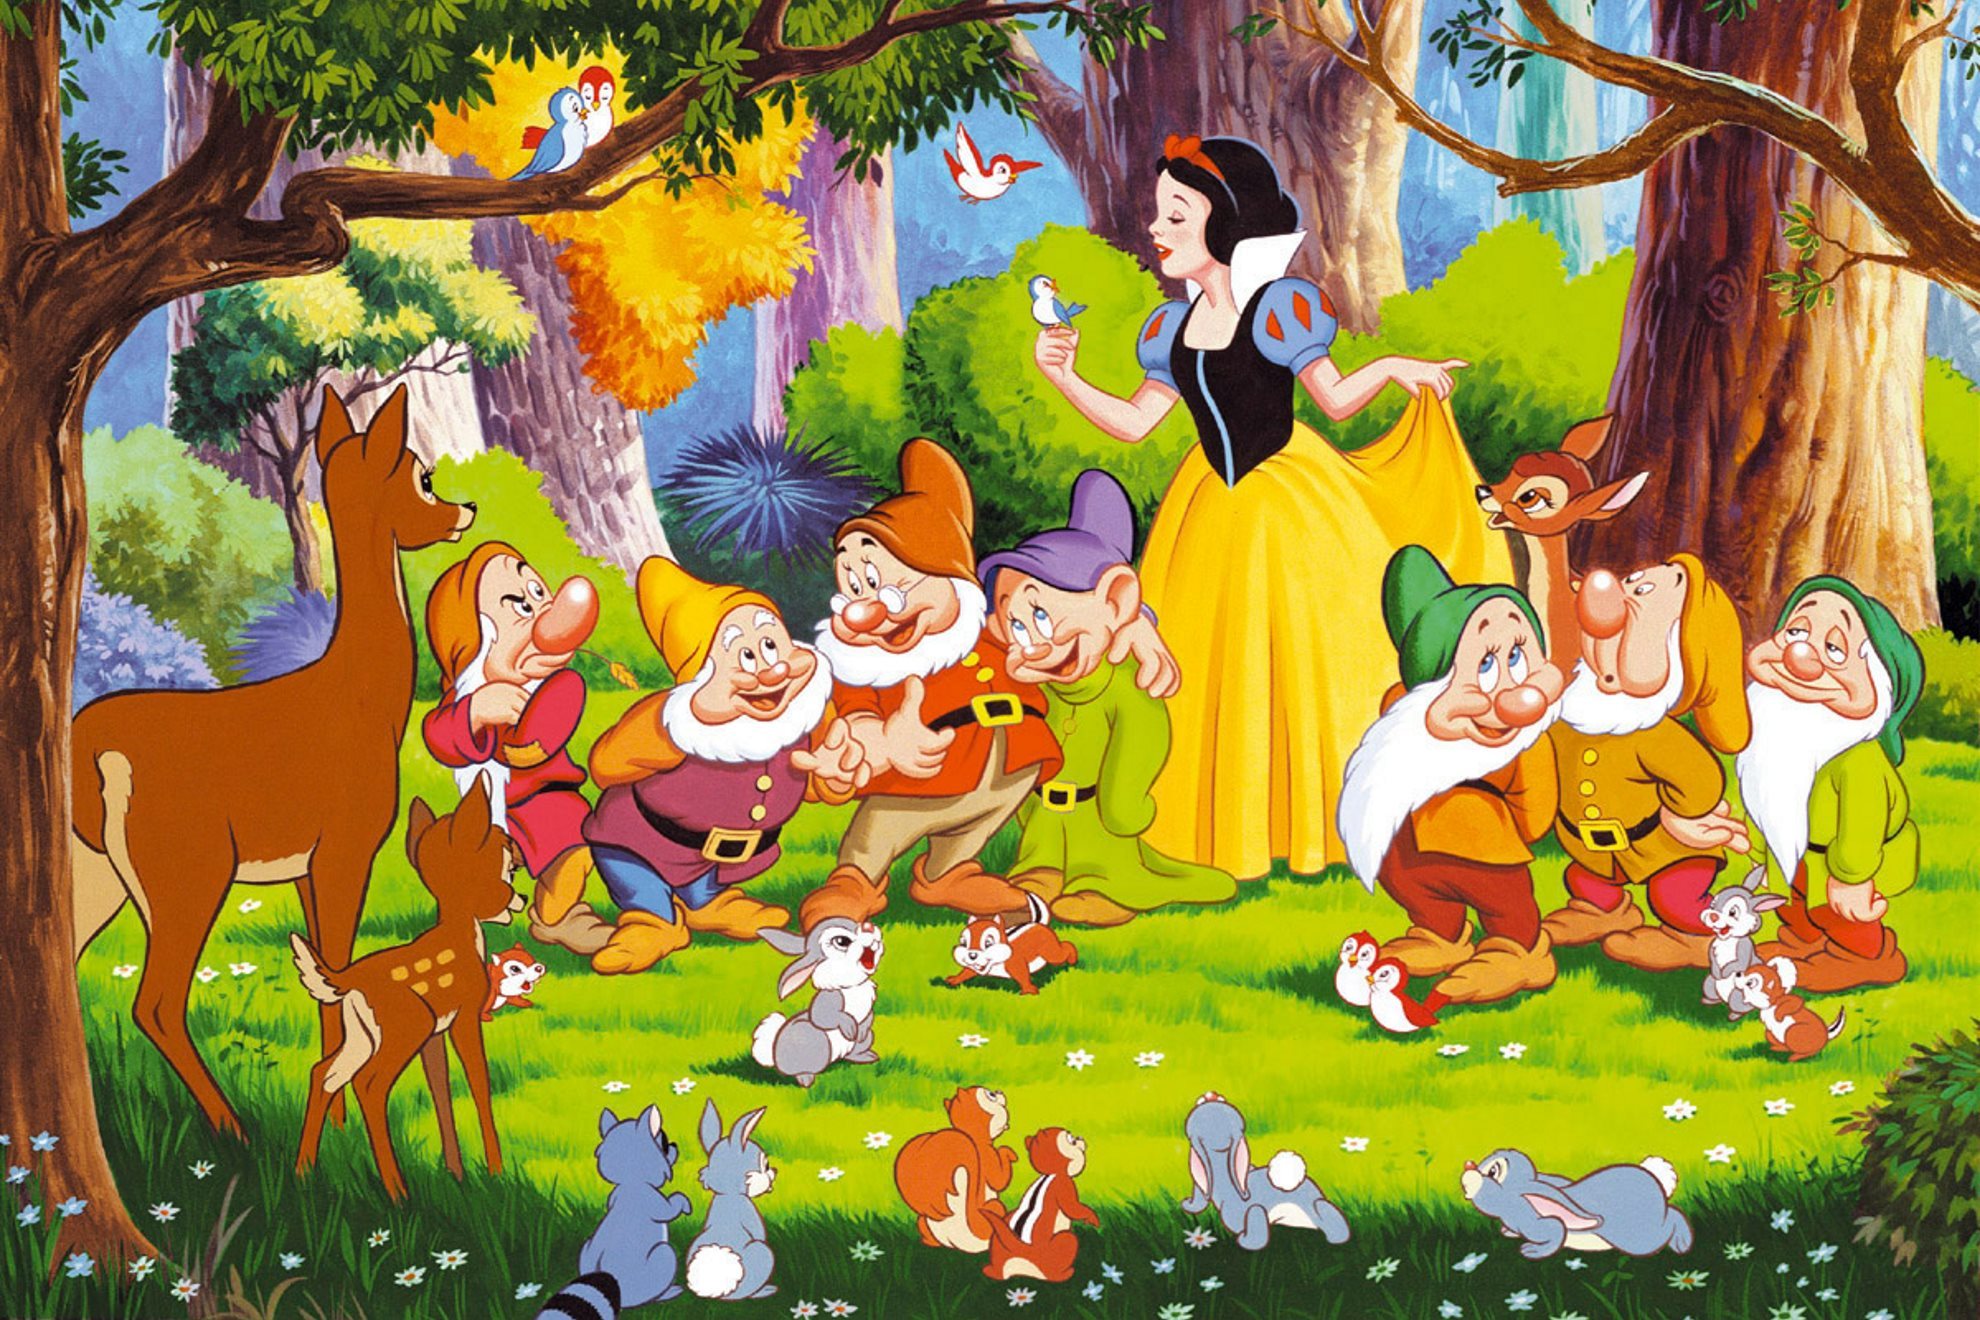 Imagen de la pelcula original de Disney Blancaniees y los siete enanitos